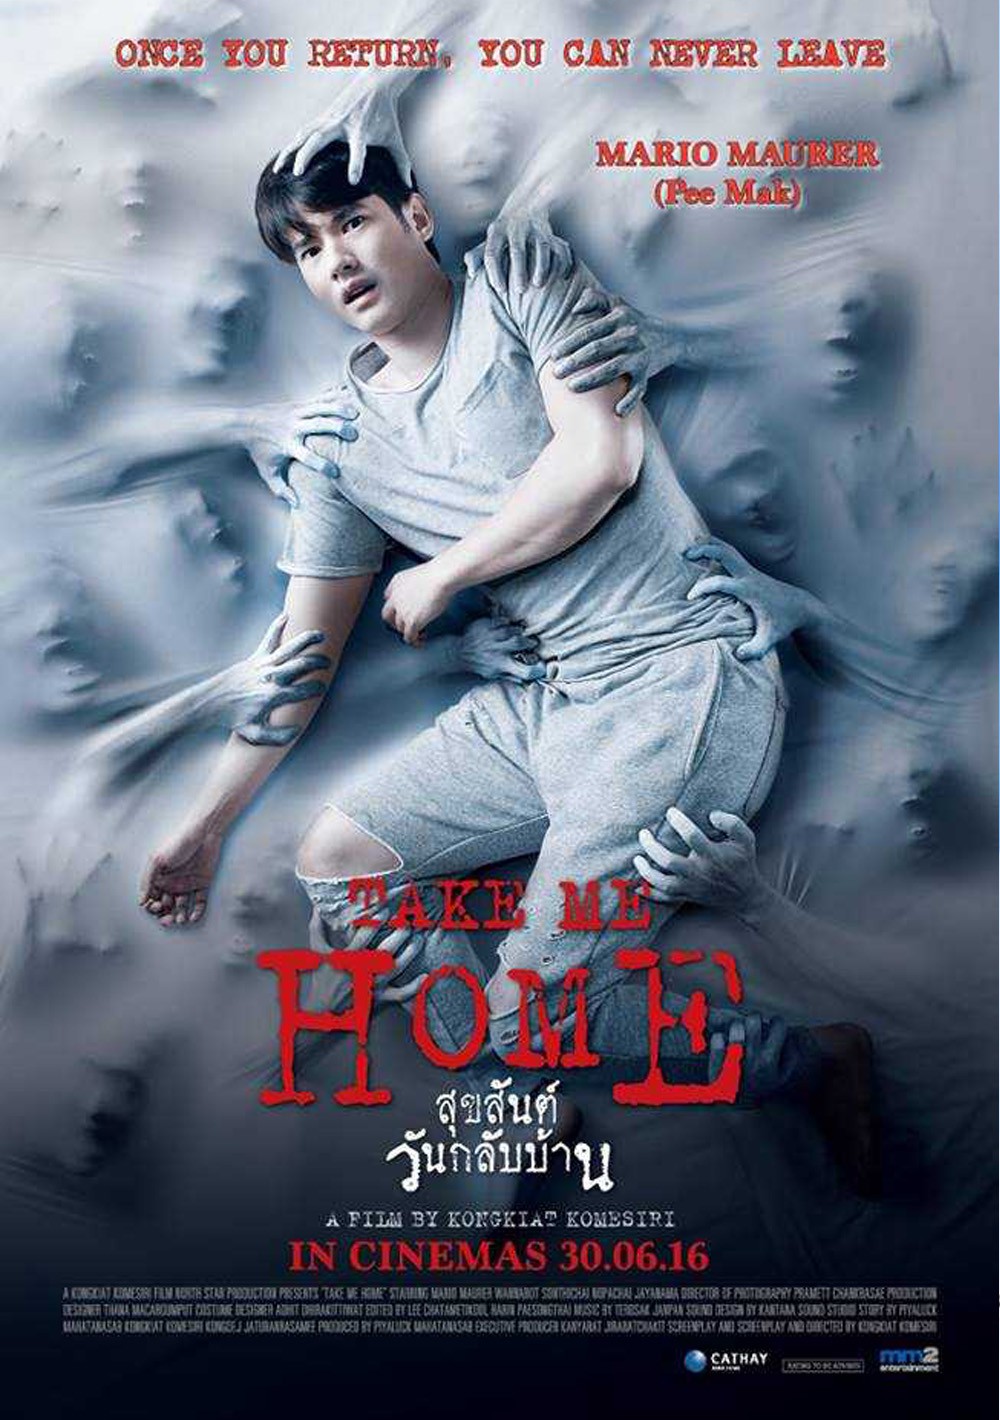 Sự thật ngã ngửa về tấm poster nắm chặt vùng nhạy cảm của phim Thái đang được share điên đảo - Ảnh 3.